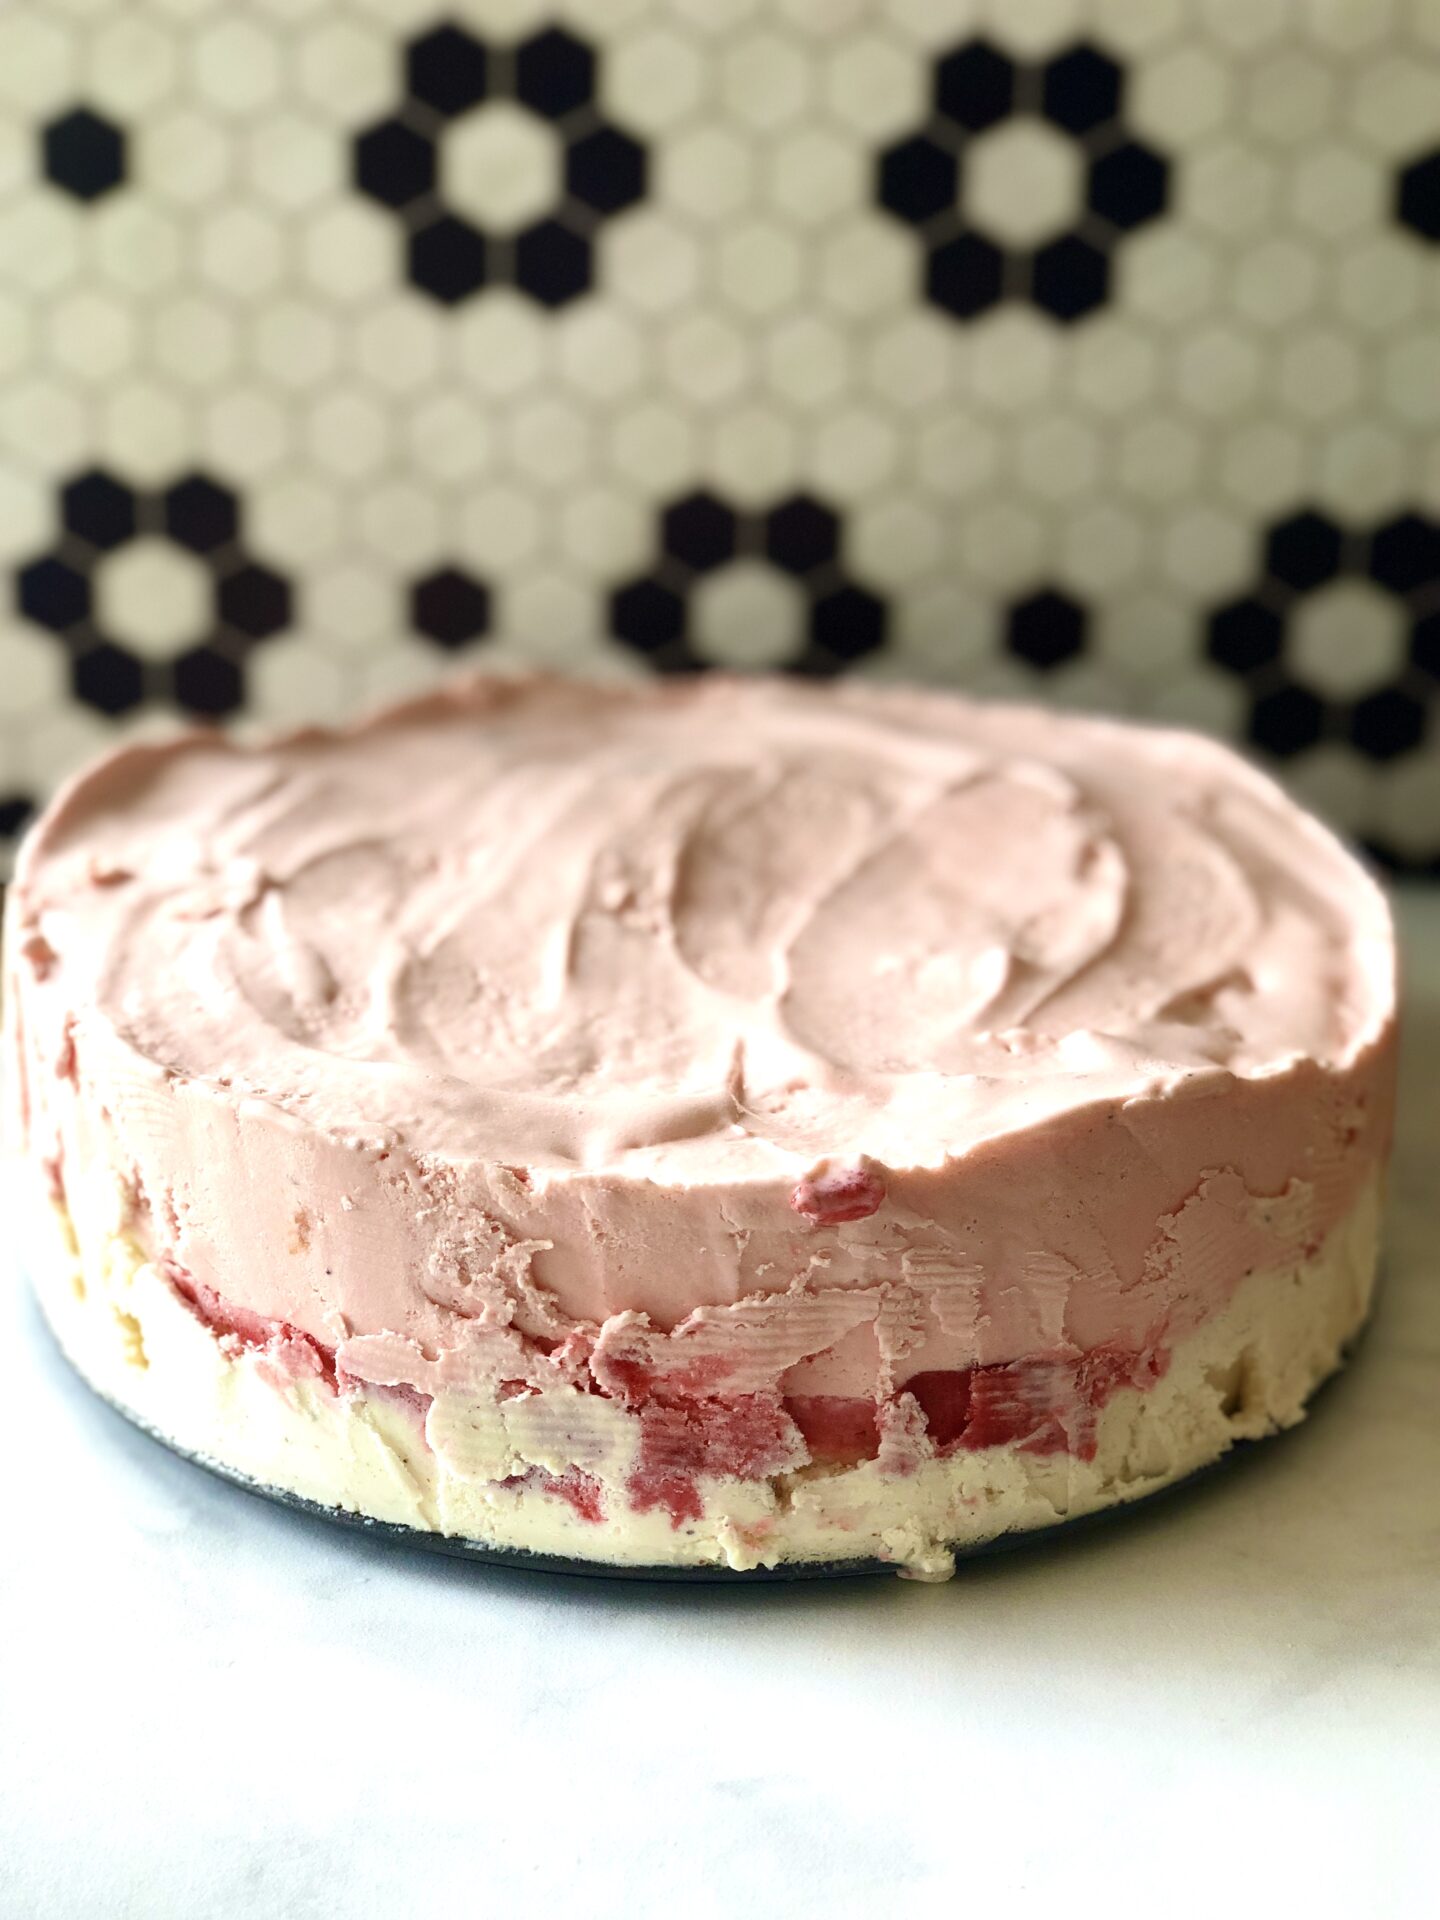 Strawberries and cream layered ice cream cake